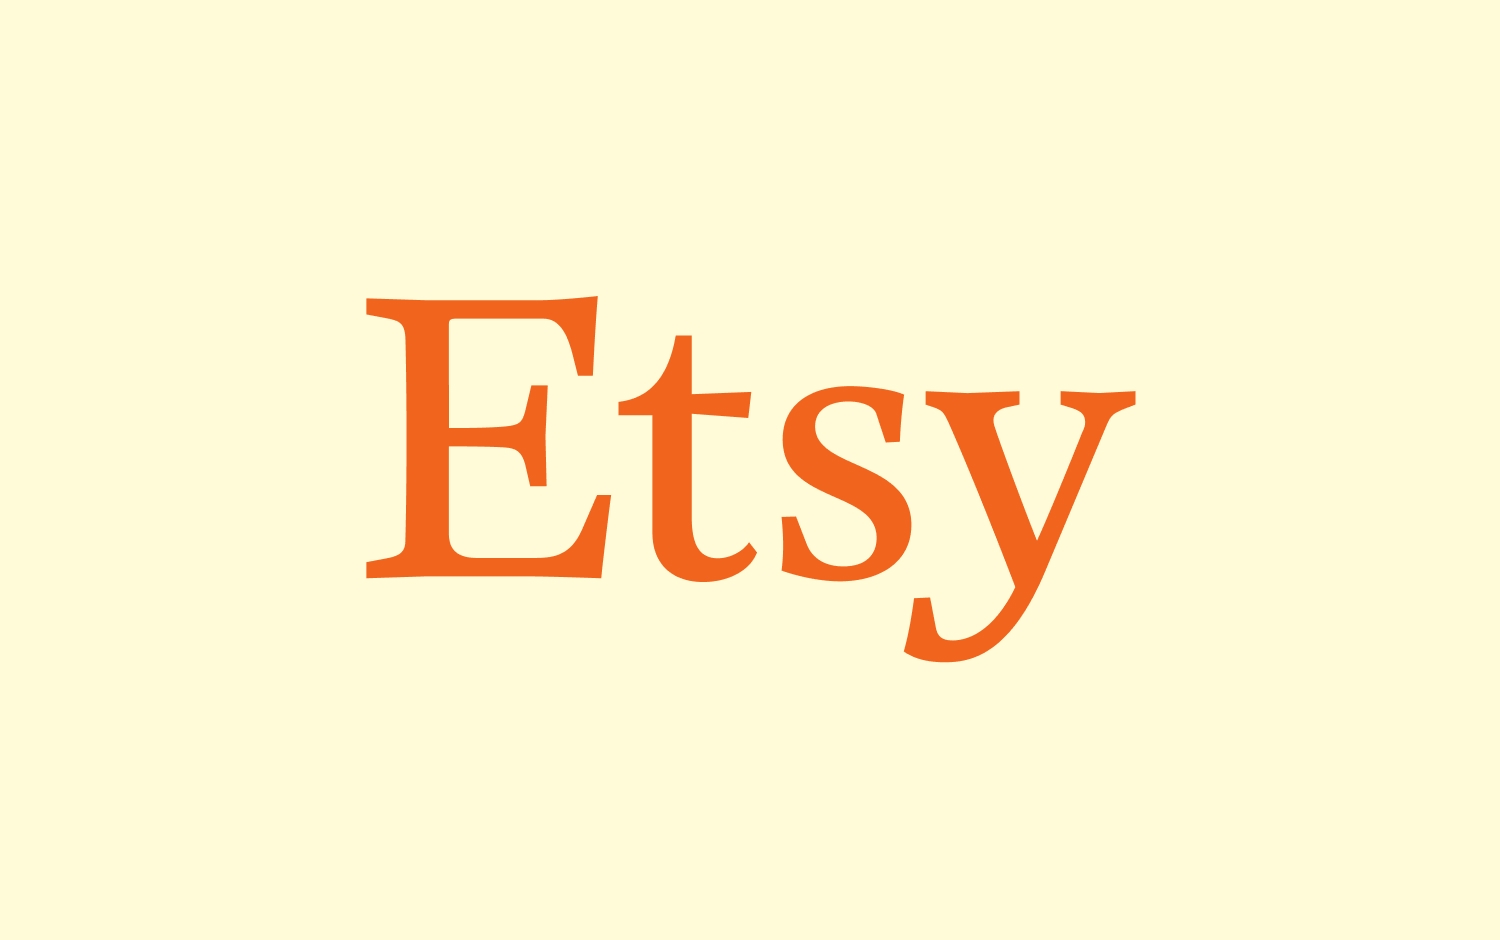 Etsy logo with orange font on a cream background